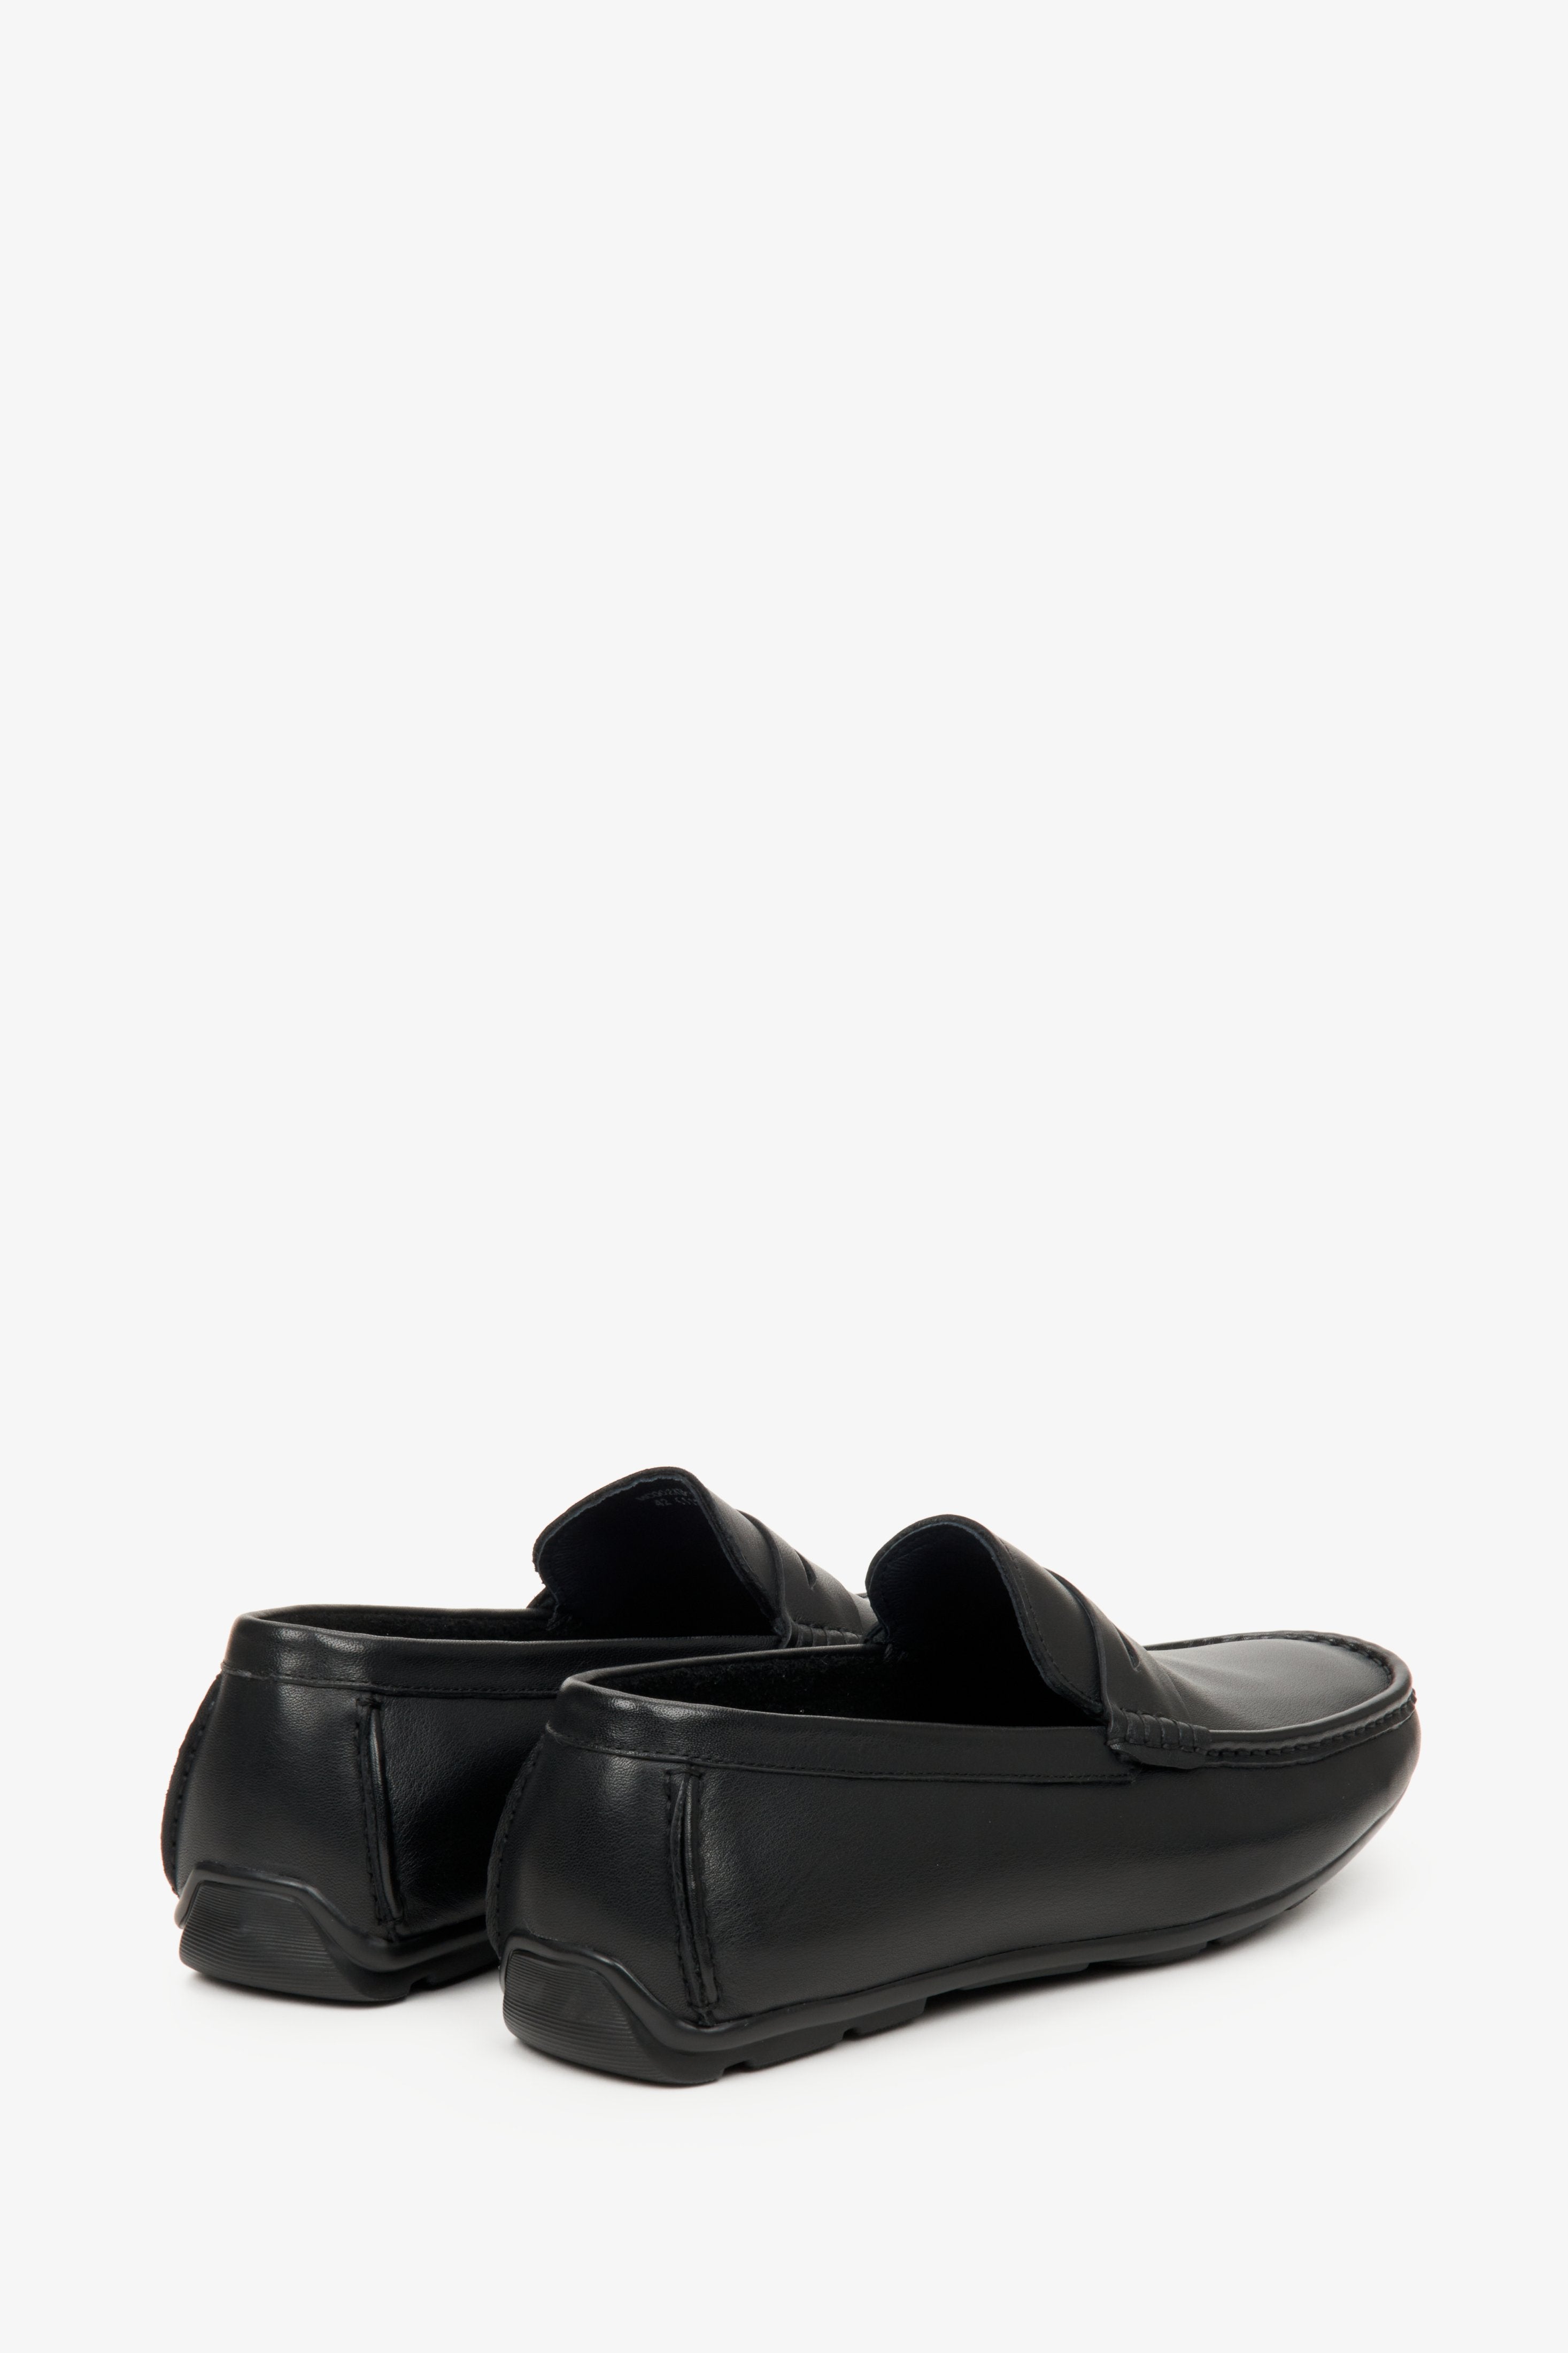 Skórzane czarne mokasyny męskie Estro na wiosnę i jesień - zbliżenie na zapiętek i przyszwę boczną butów.